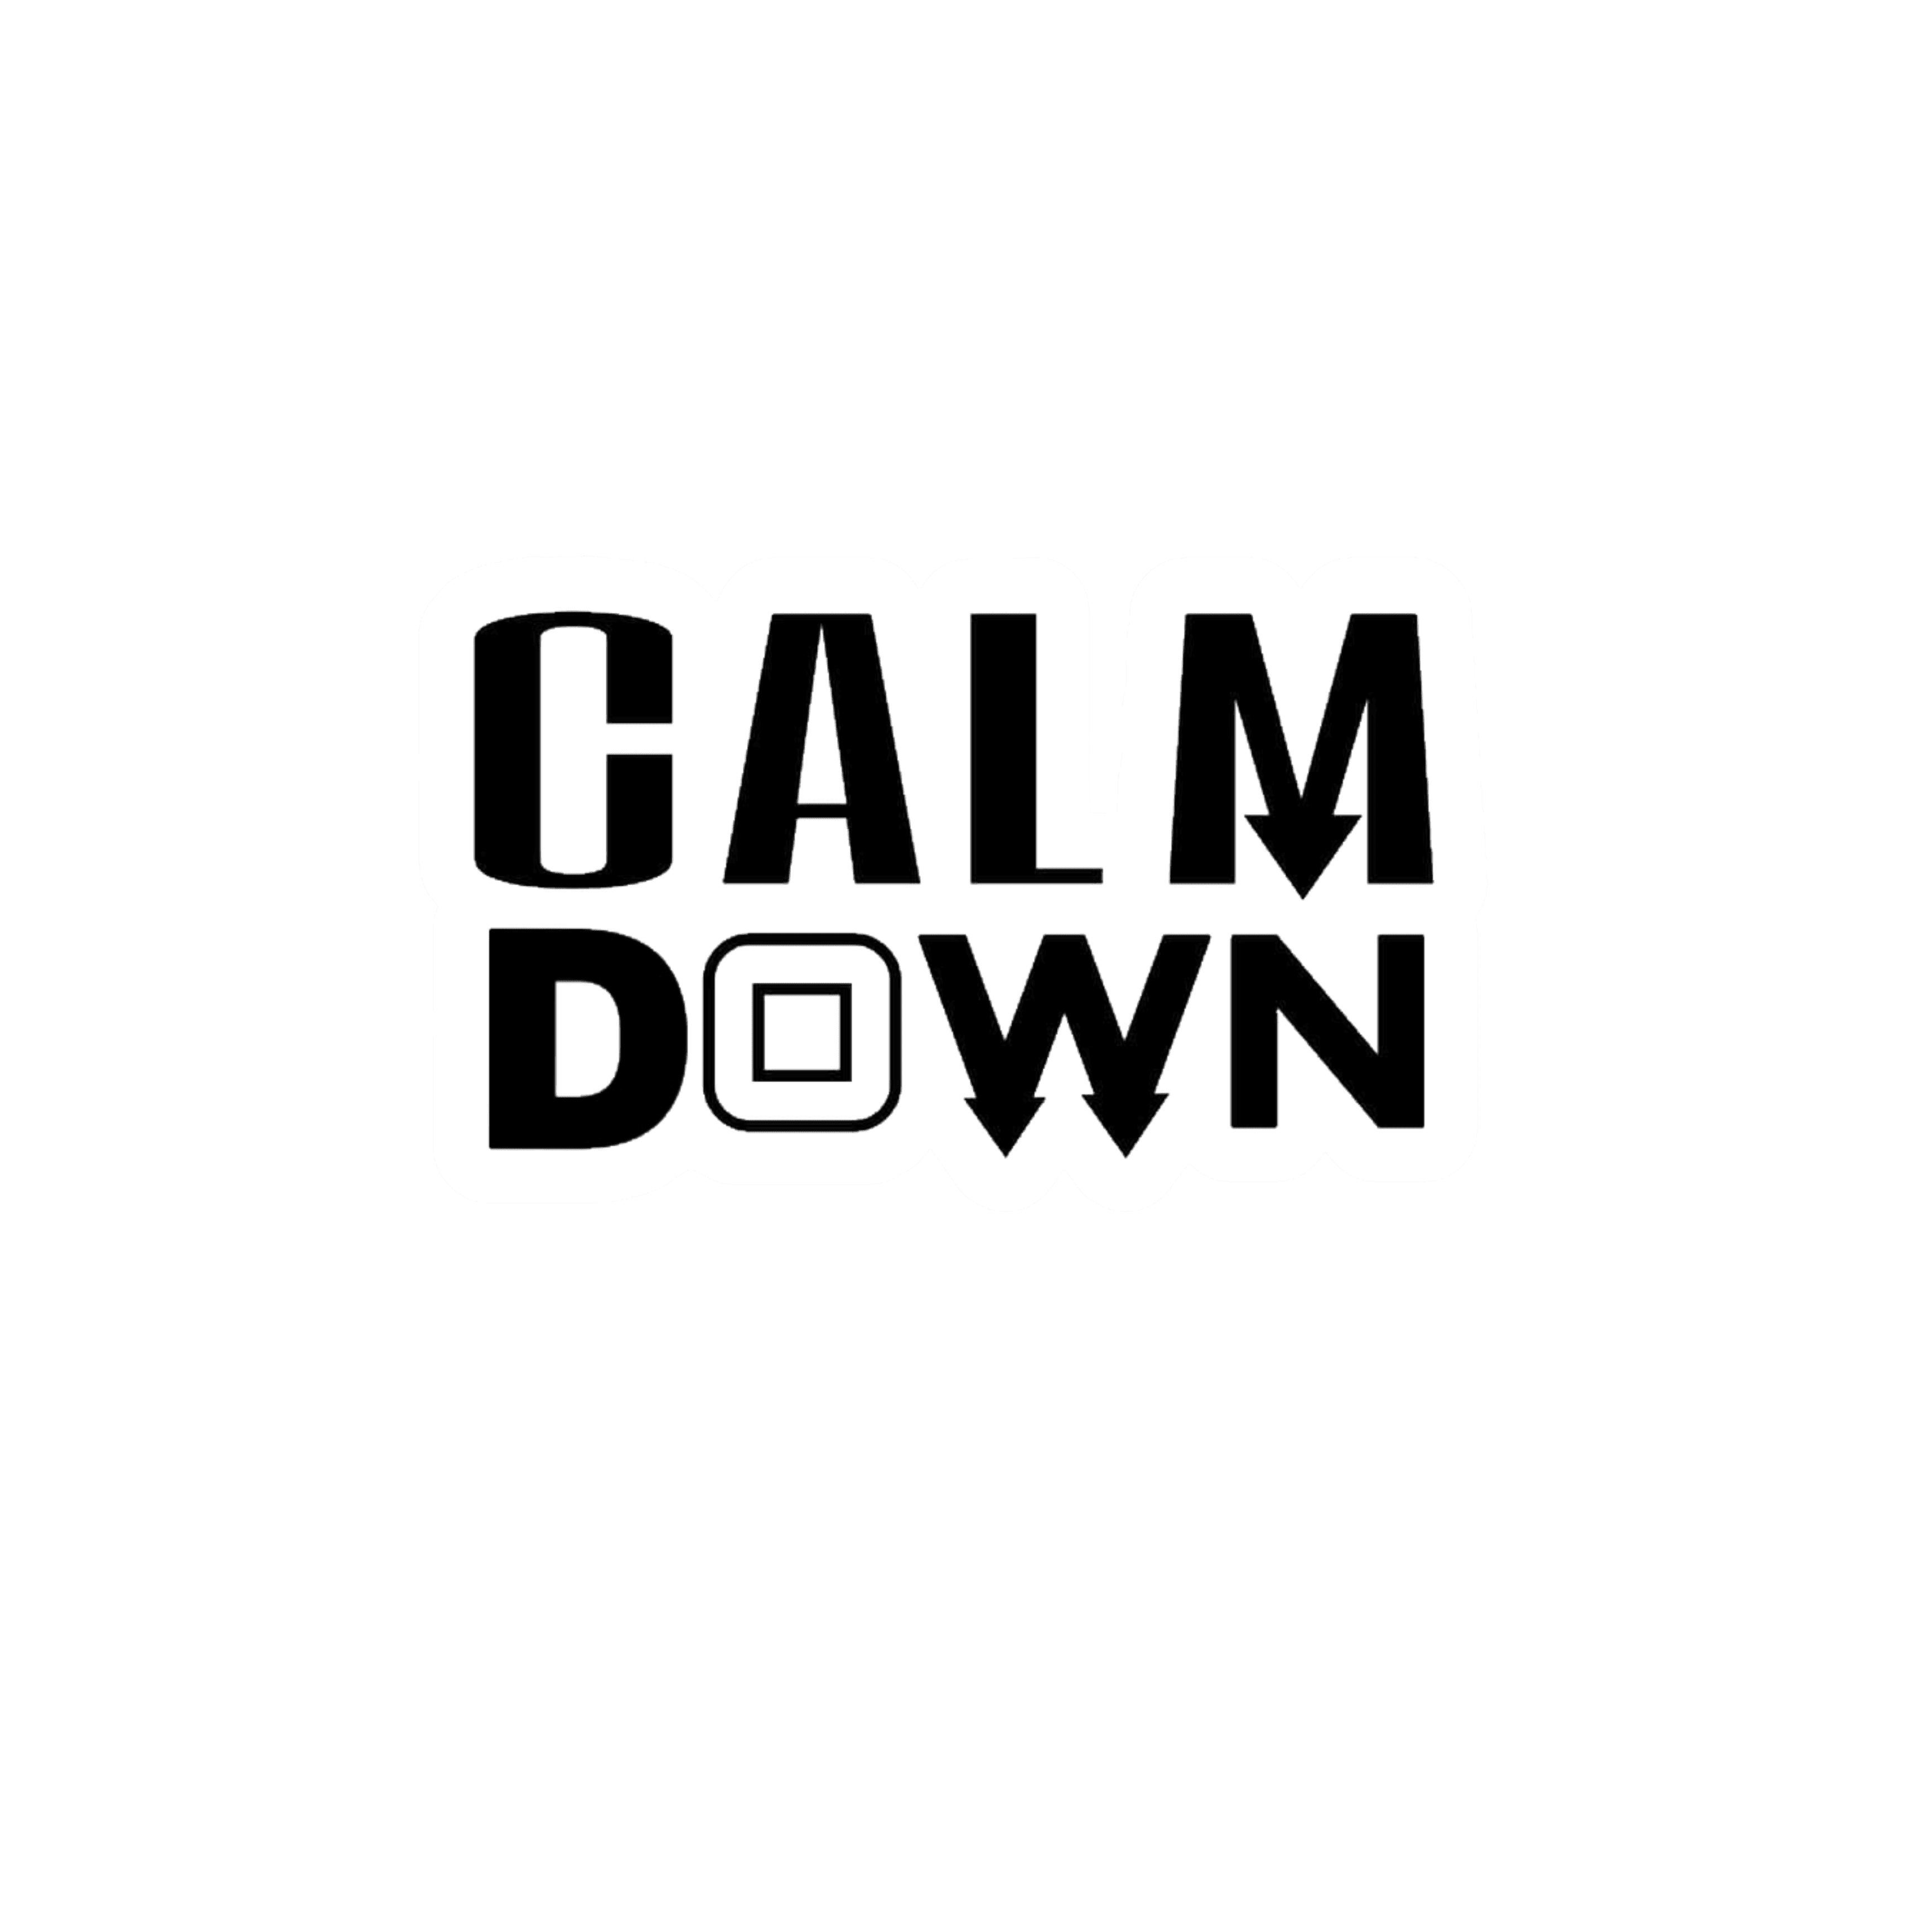 Calm Down